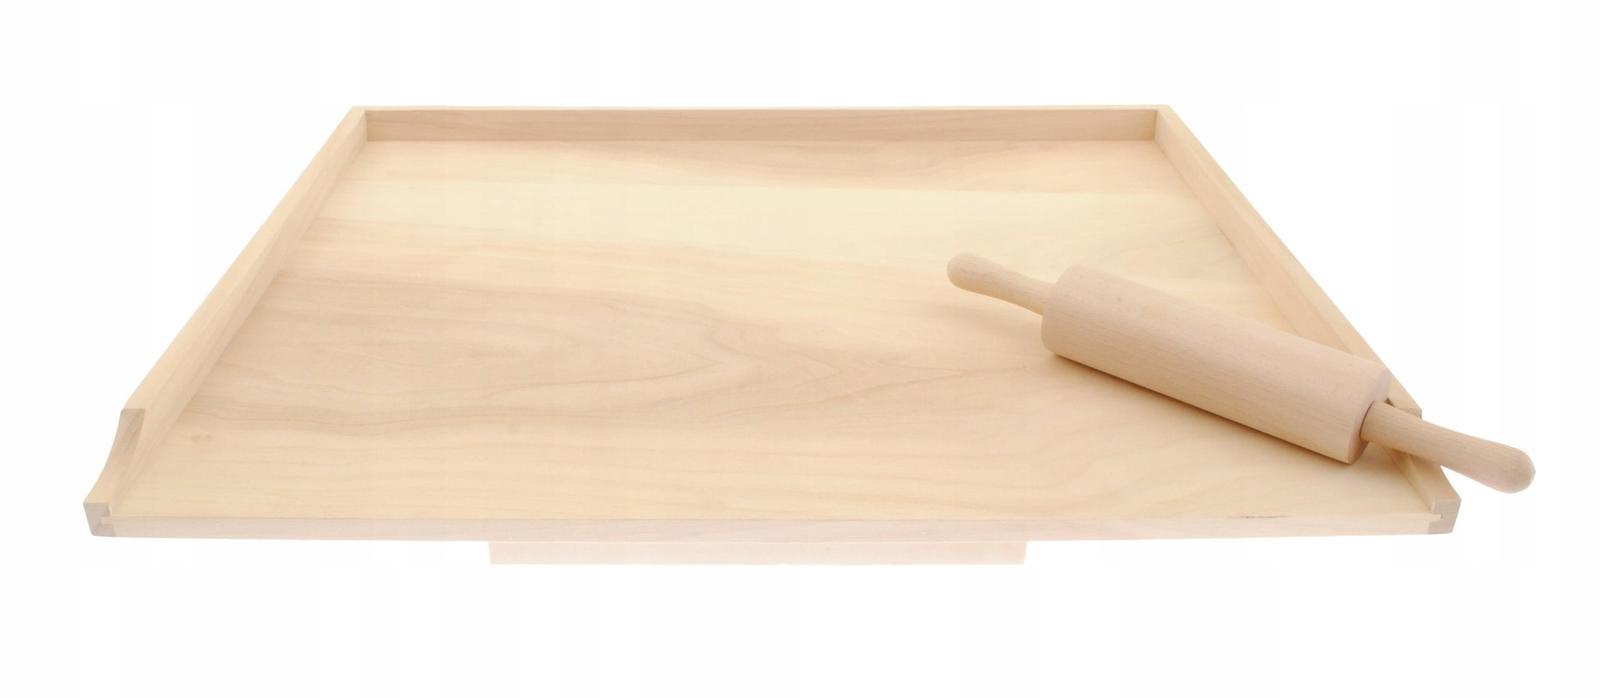 Stolnica kuchenna 60x1,6x75 cm drewniana jednostronna XXL + wałek  0 Full Screen